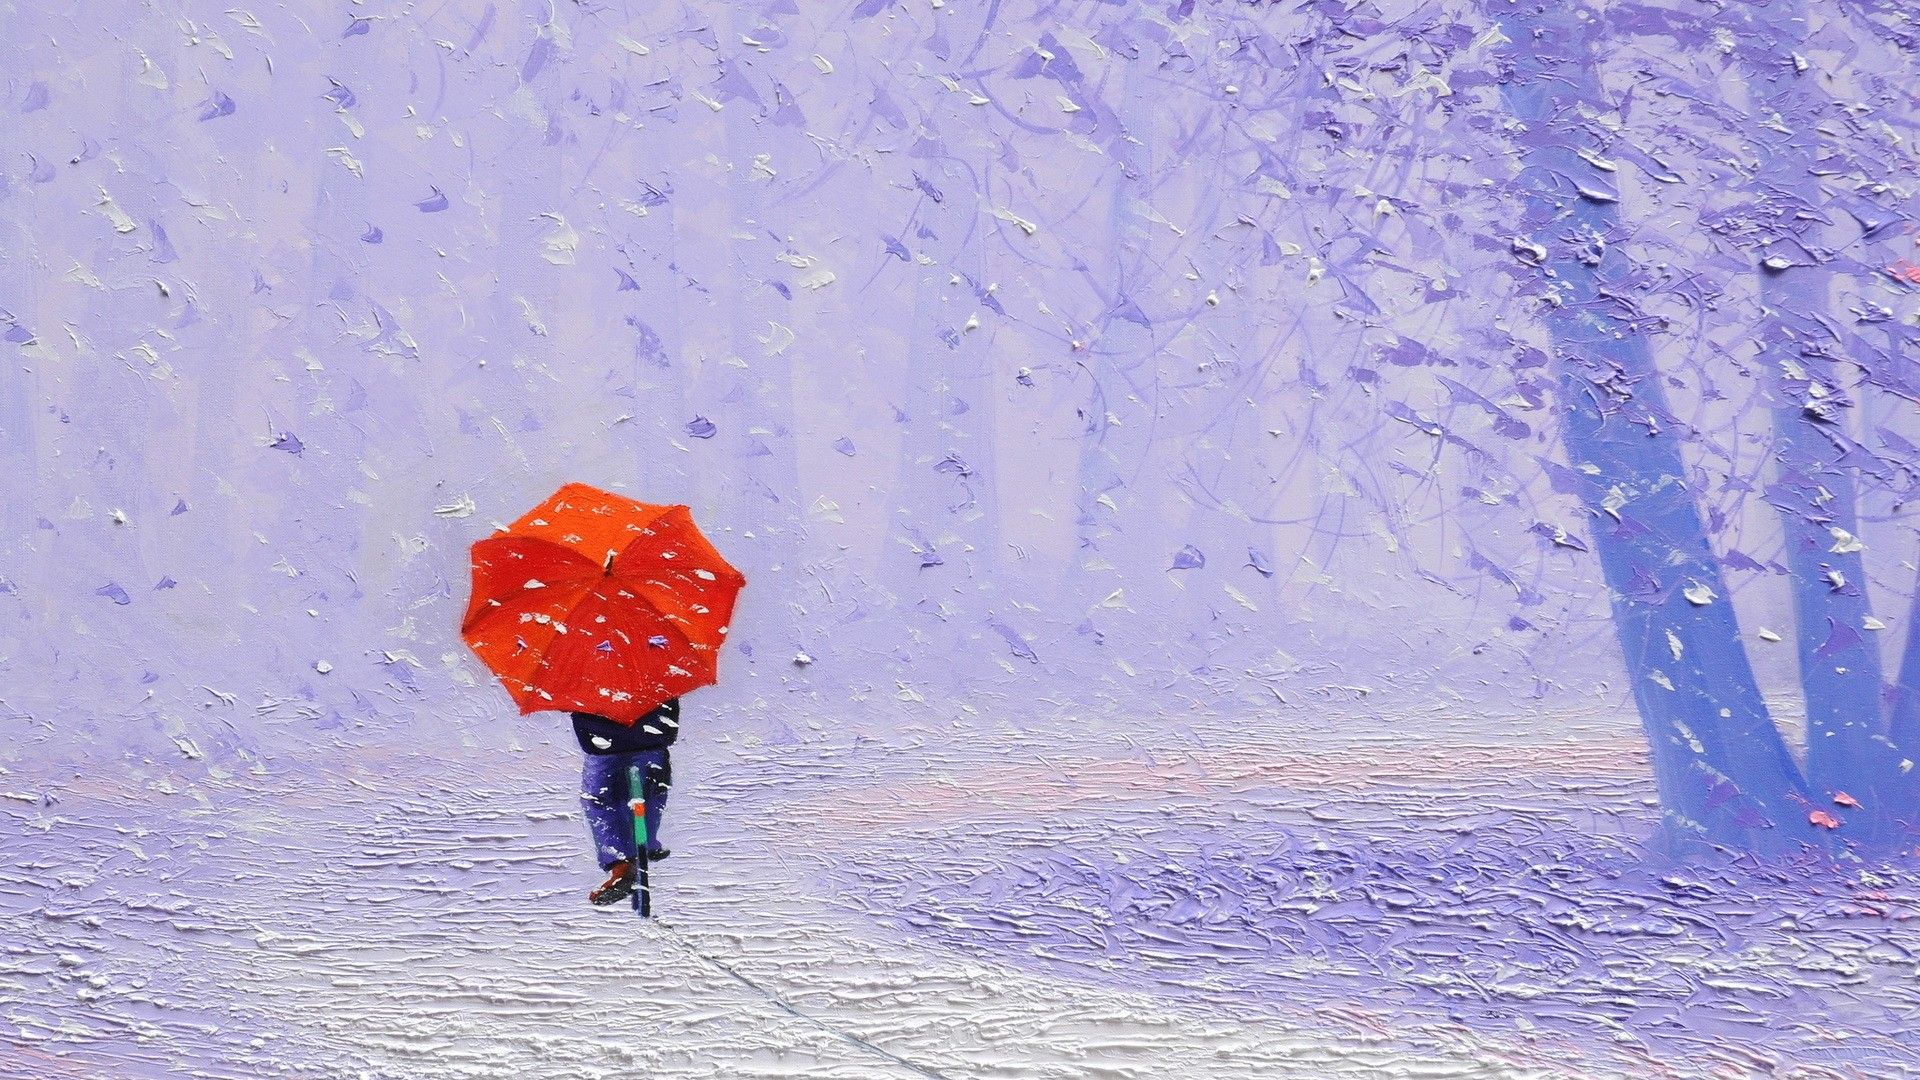 نقاشی روح بخش باران در بهار با چتر قرمز و هاله بنفش